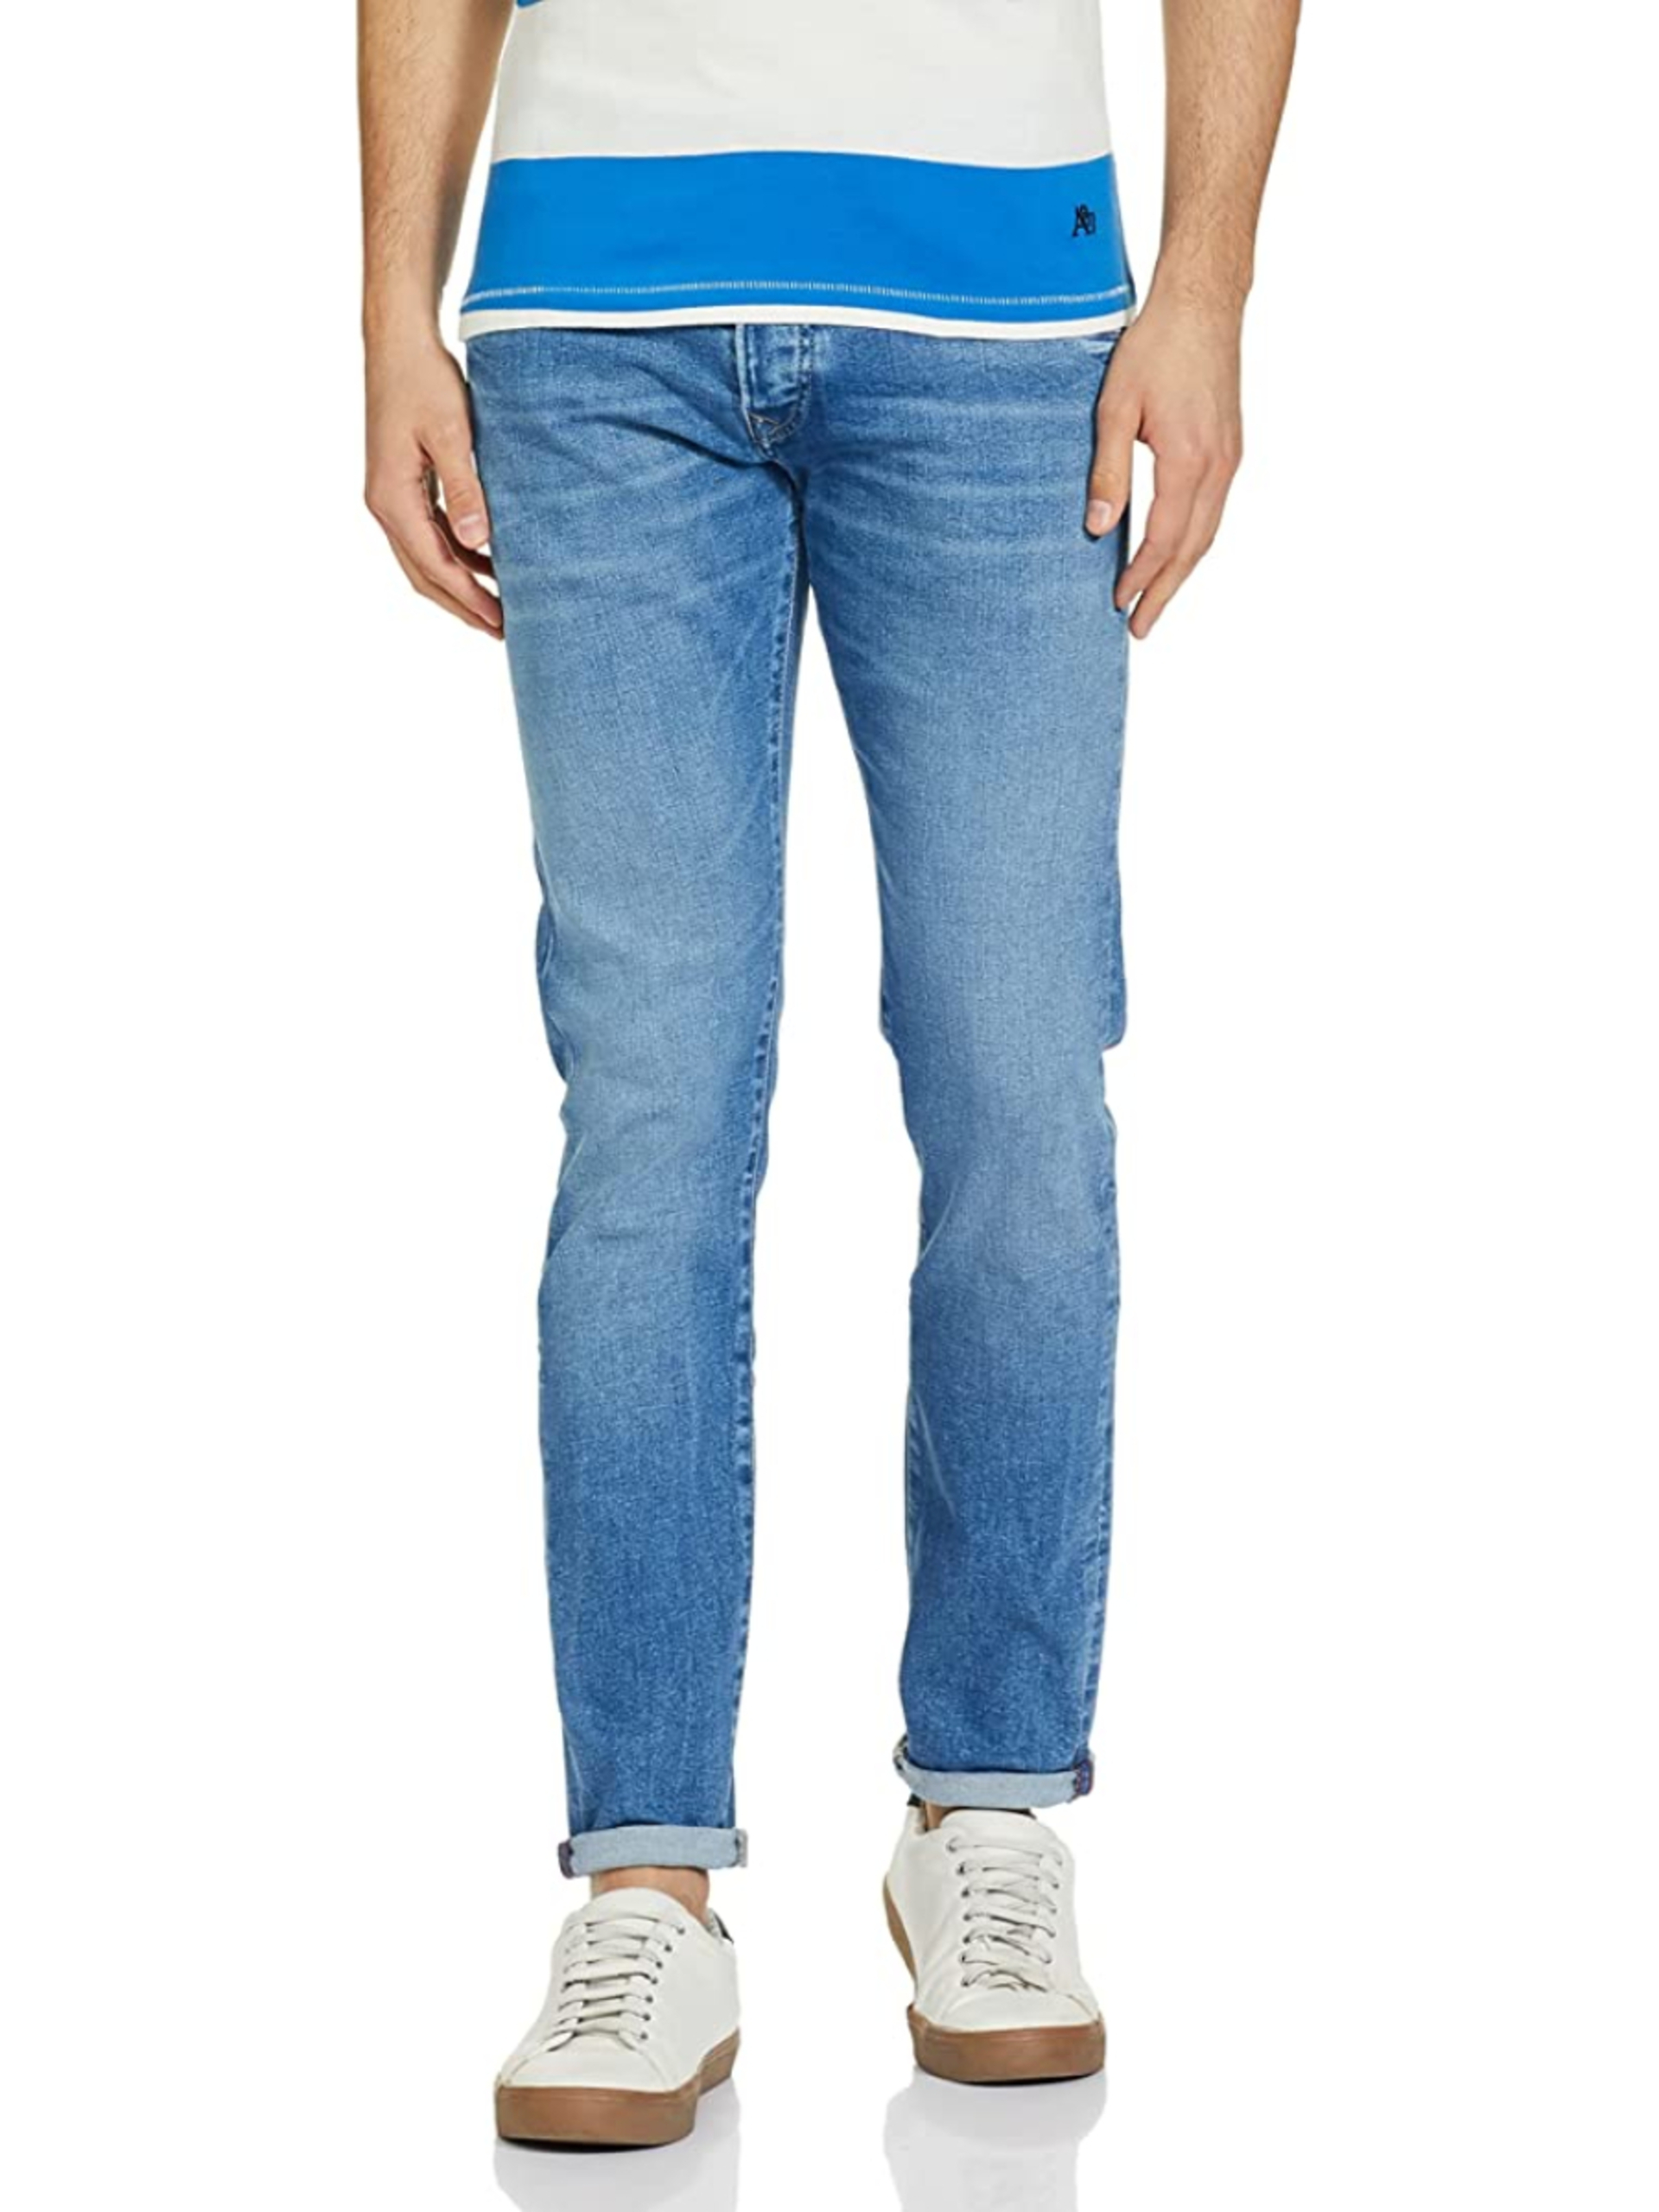 Pepe Jeans pánské modré džíny Stanley - 36 (000)